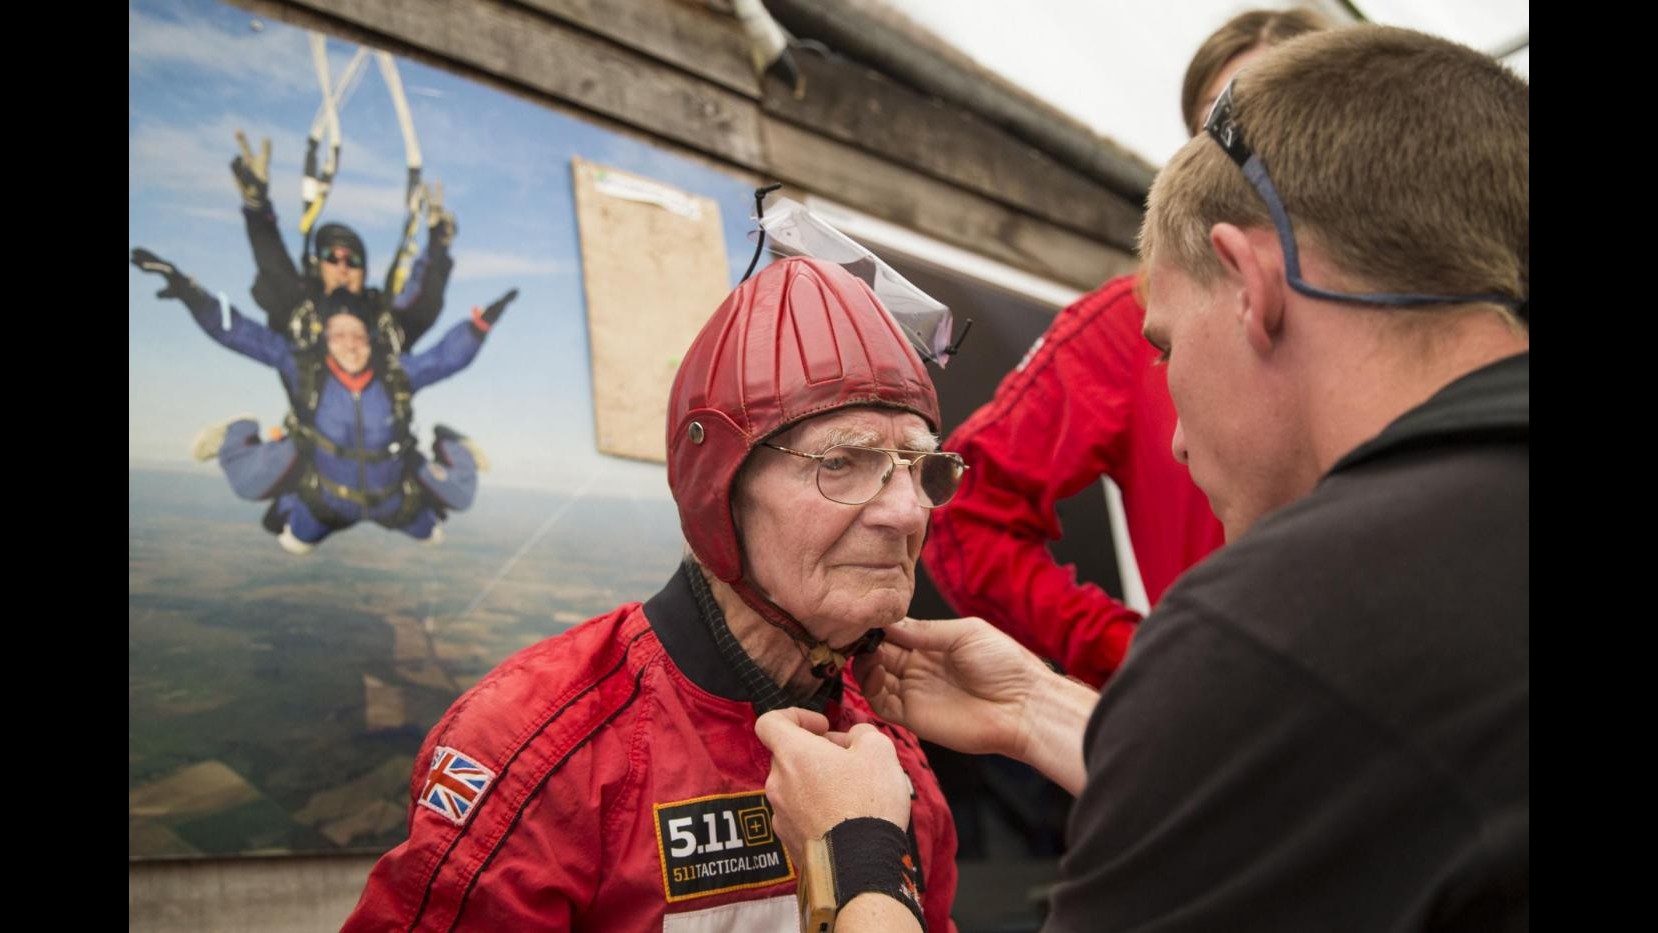 FOTO Veterani del D-Day si lanciano con paracadute a 90 anni